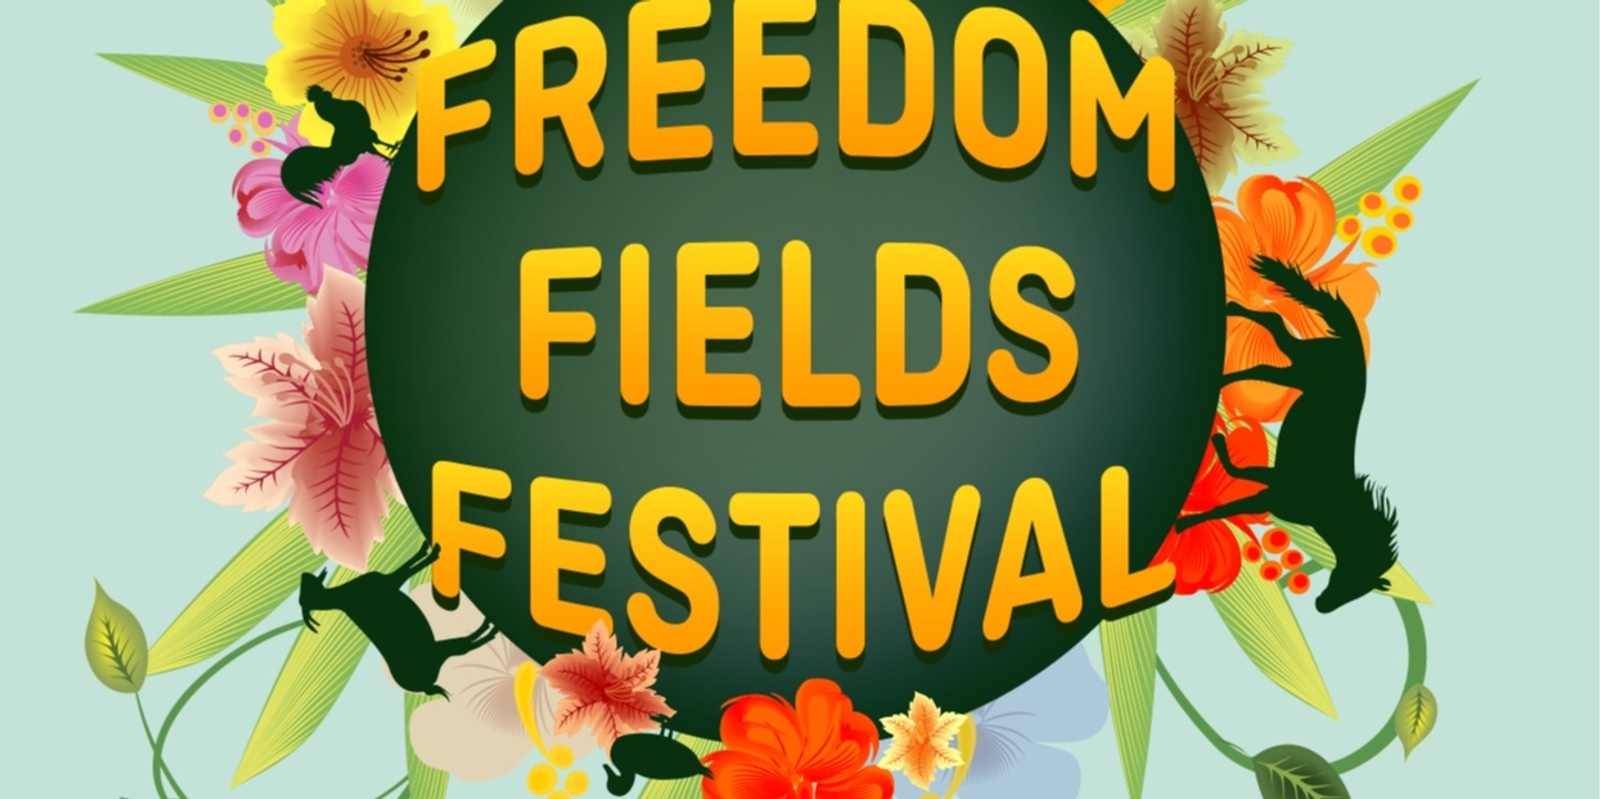 Banner image for Freedom Fields Festival 